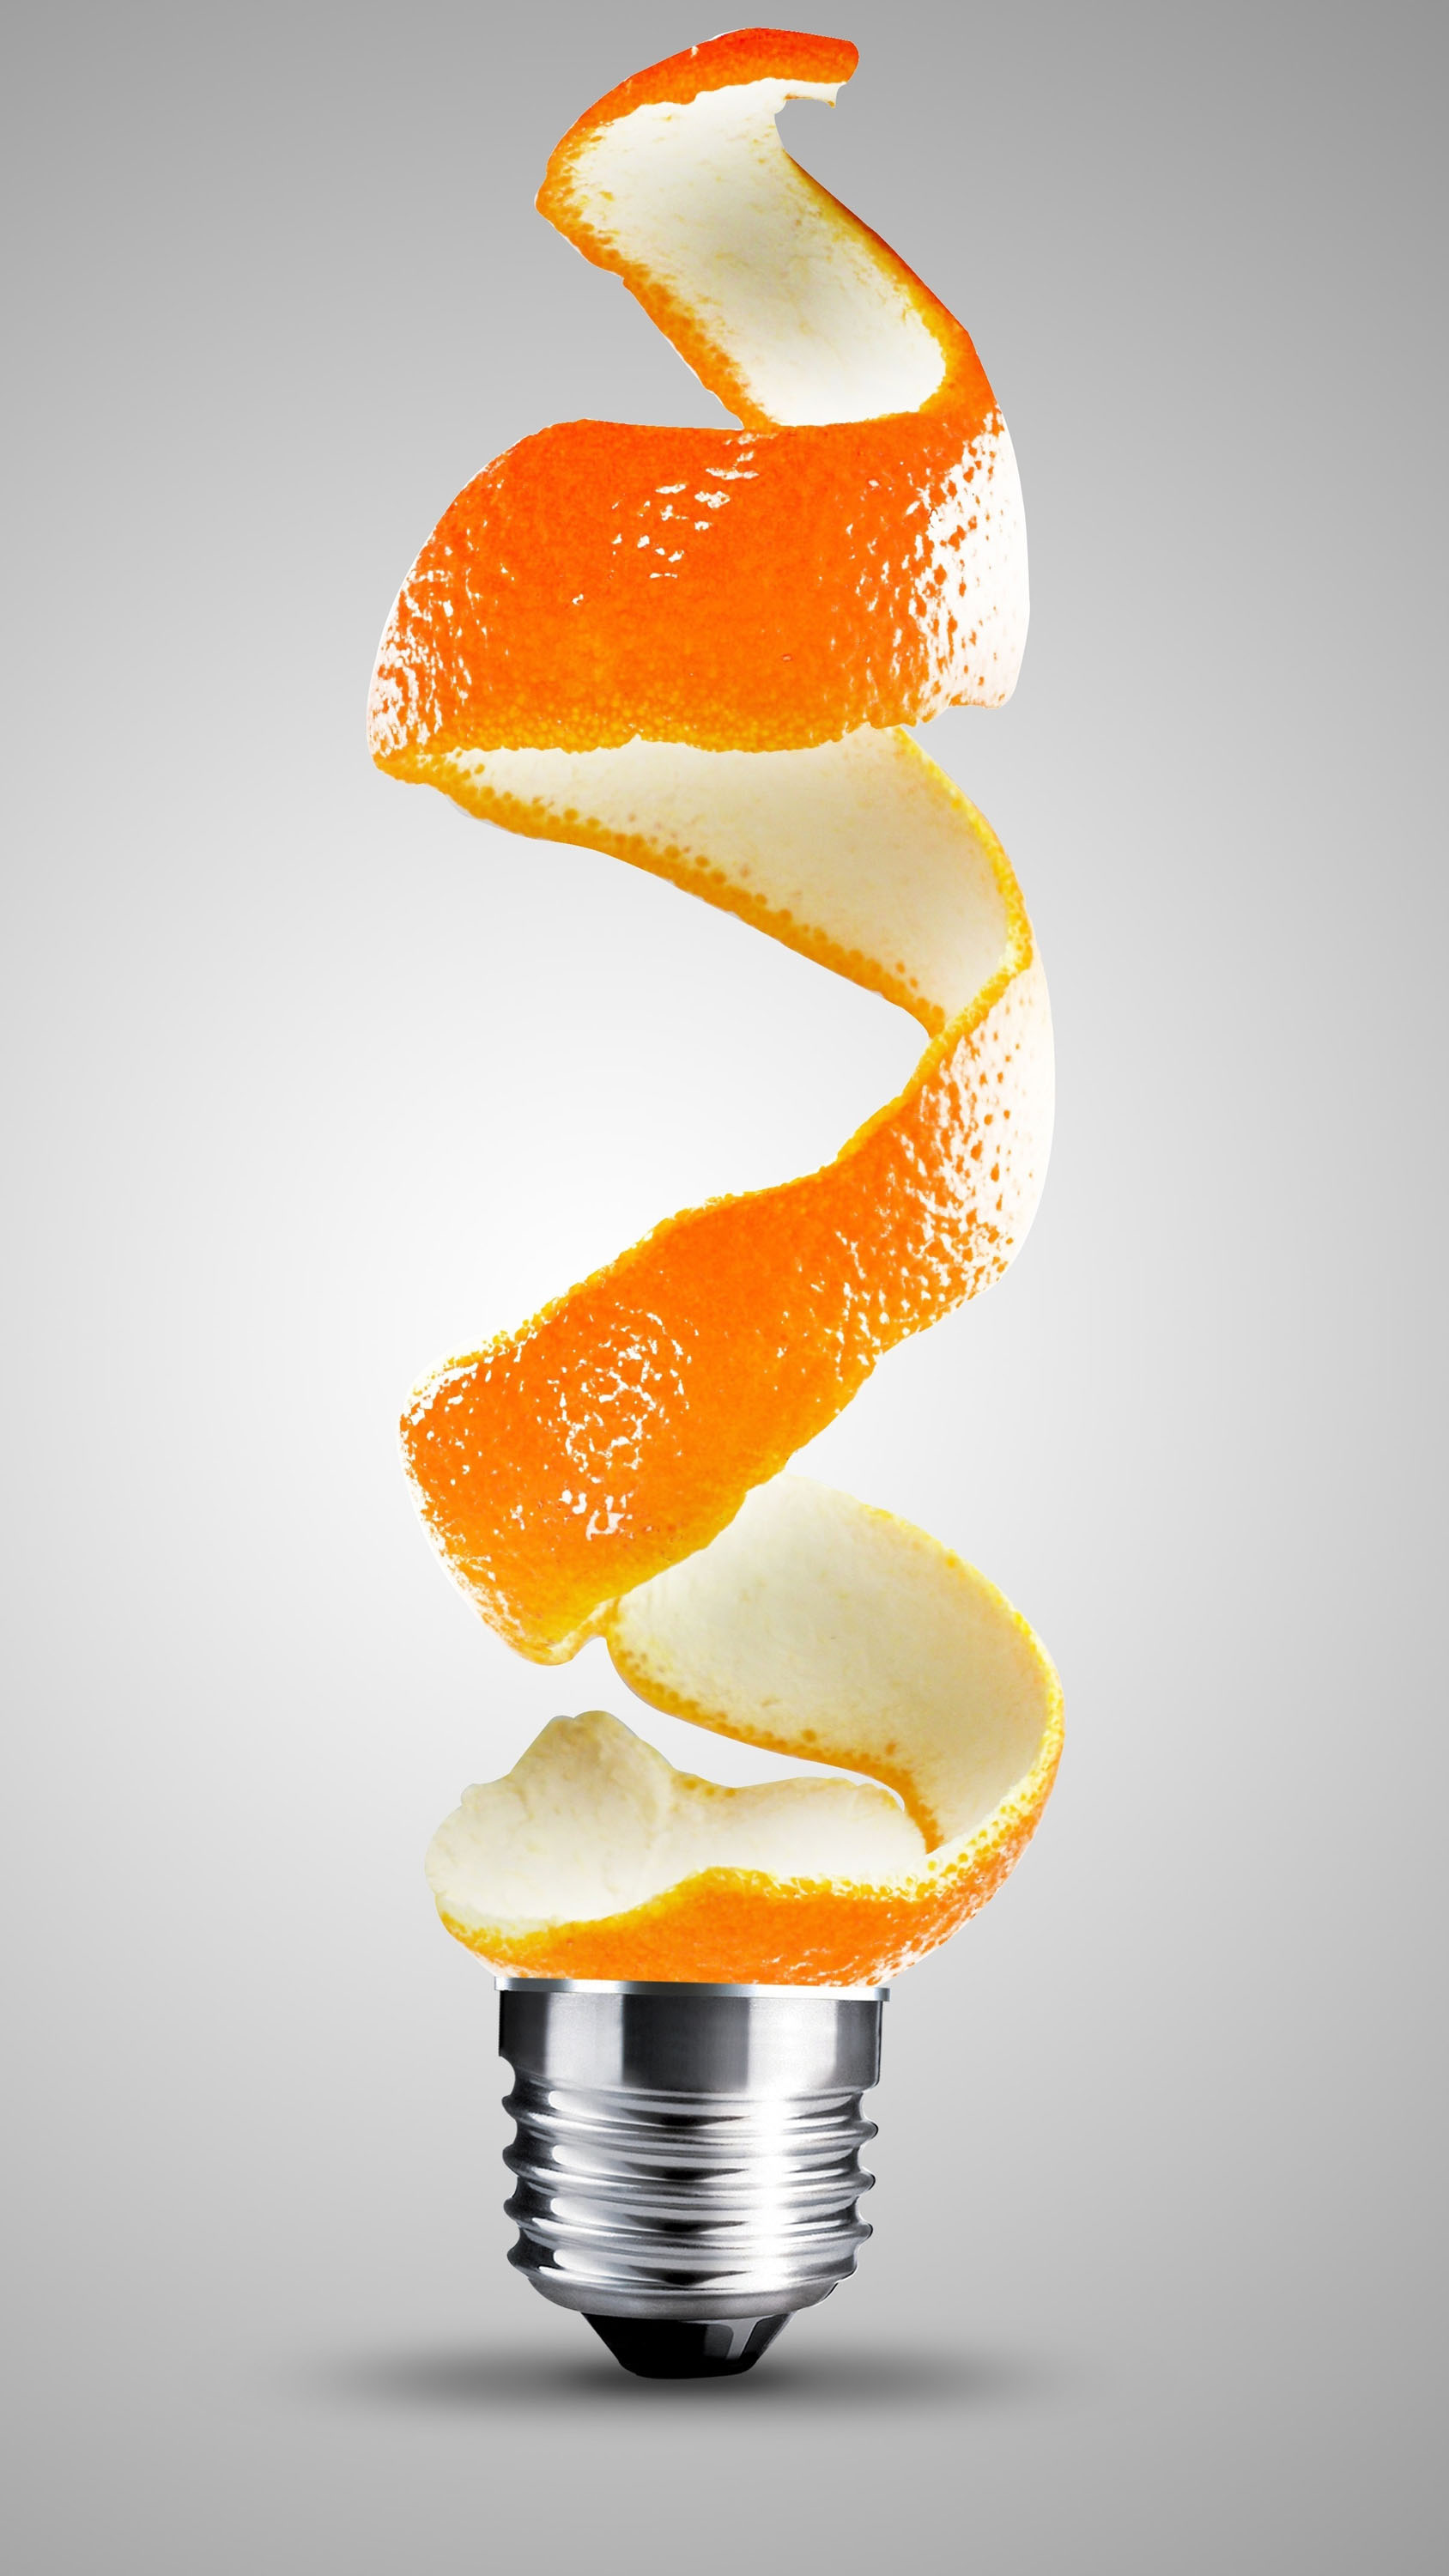 General 1688x3000 light bulb orange (fruit) portrait display spiral